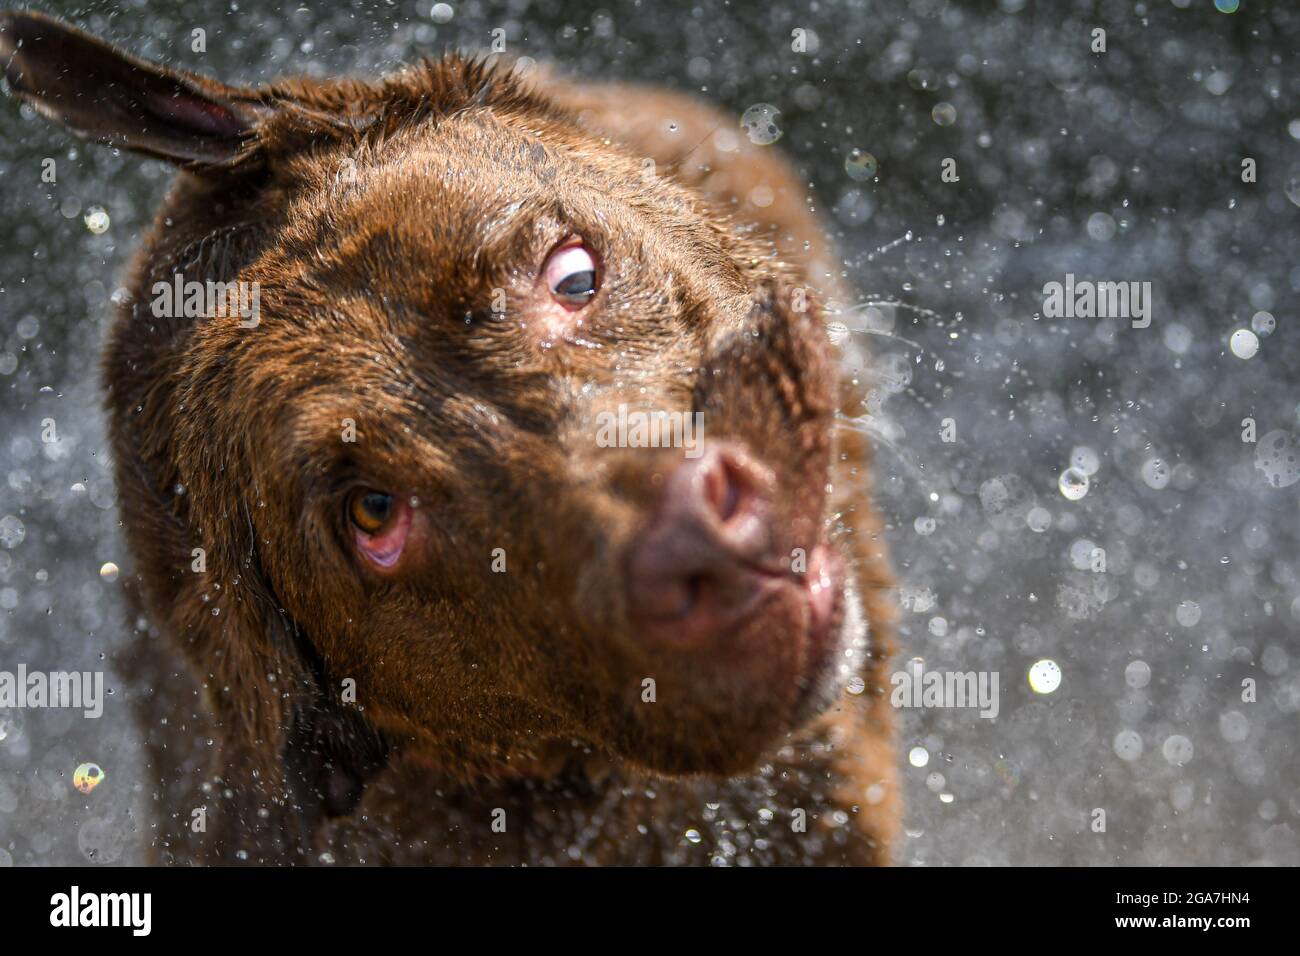 Verrückter Hund / dummer Hund, der Wasser abschüttelt - dummes Gesicht mit wilden Augen und seltsamem Ausdruck Stockfoto